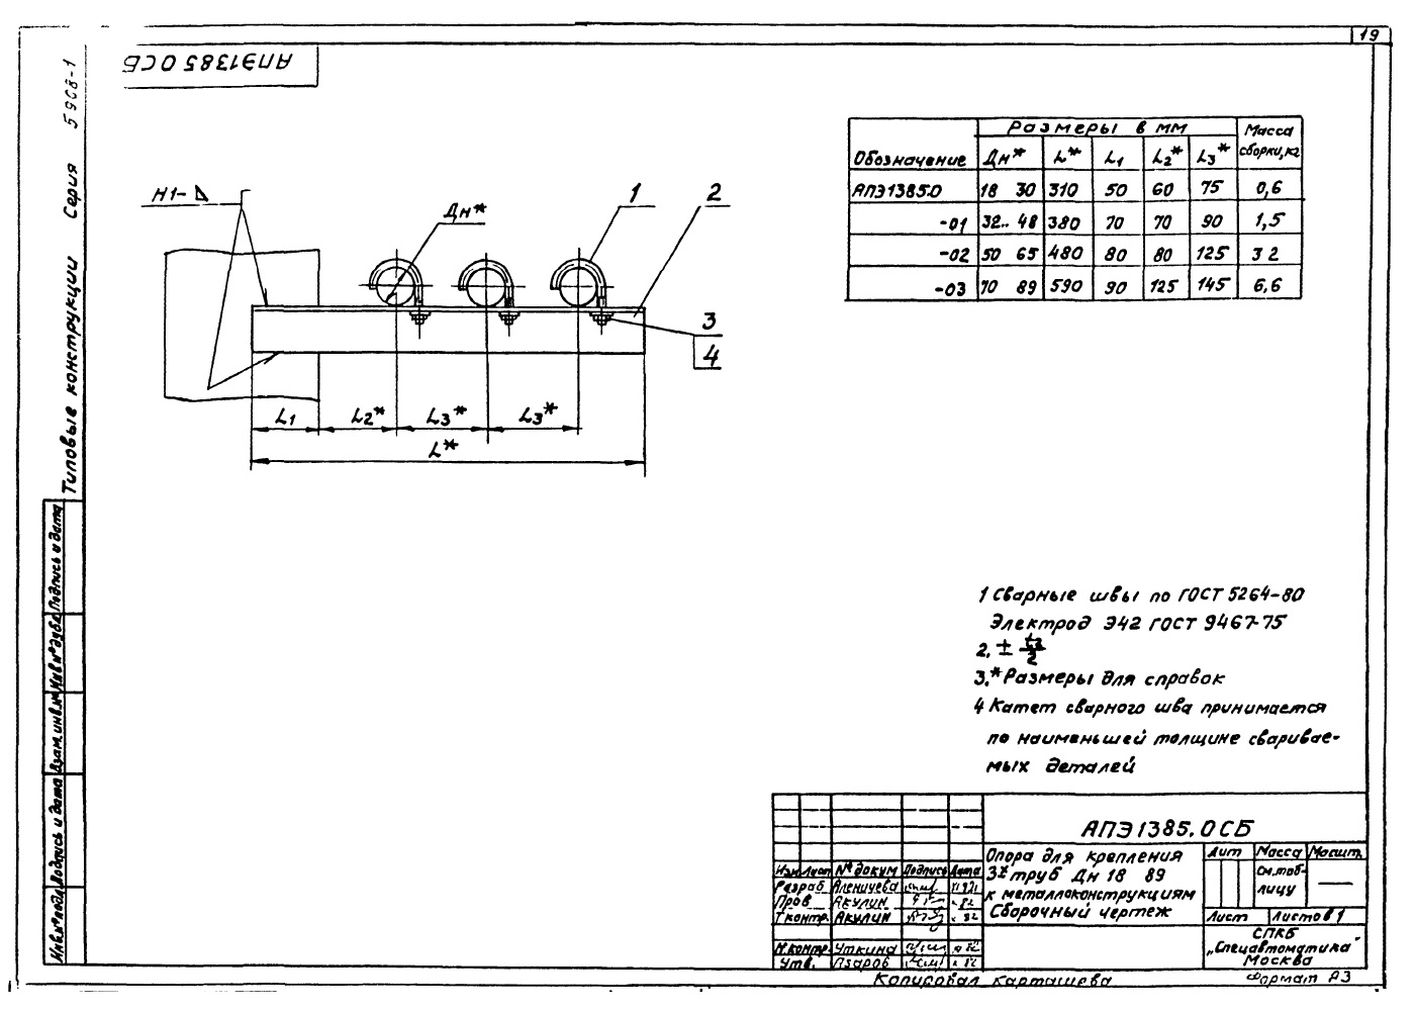 Опора для крепления трех труб Дн18...89 к металлоконструкциям АПЭ 1385.0 серия 5.908-1 стр.1